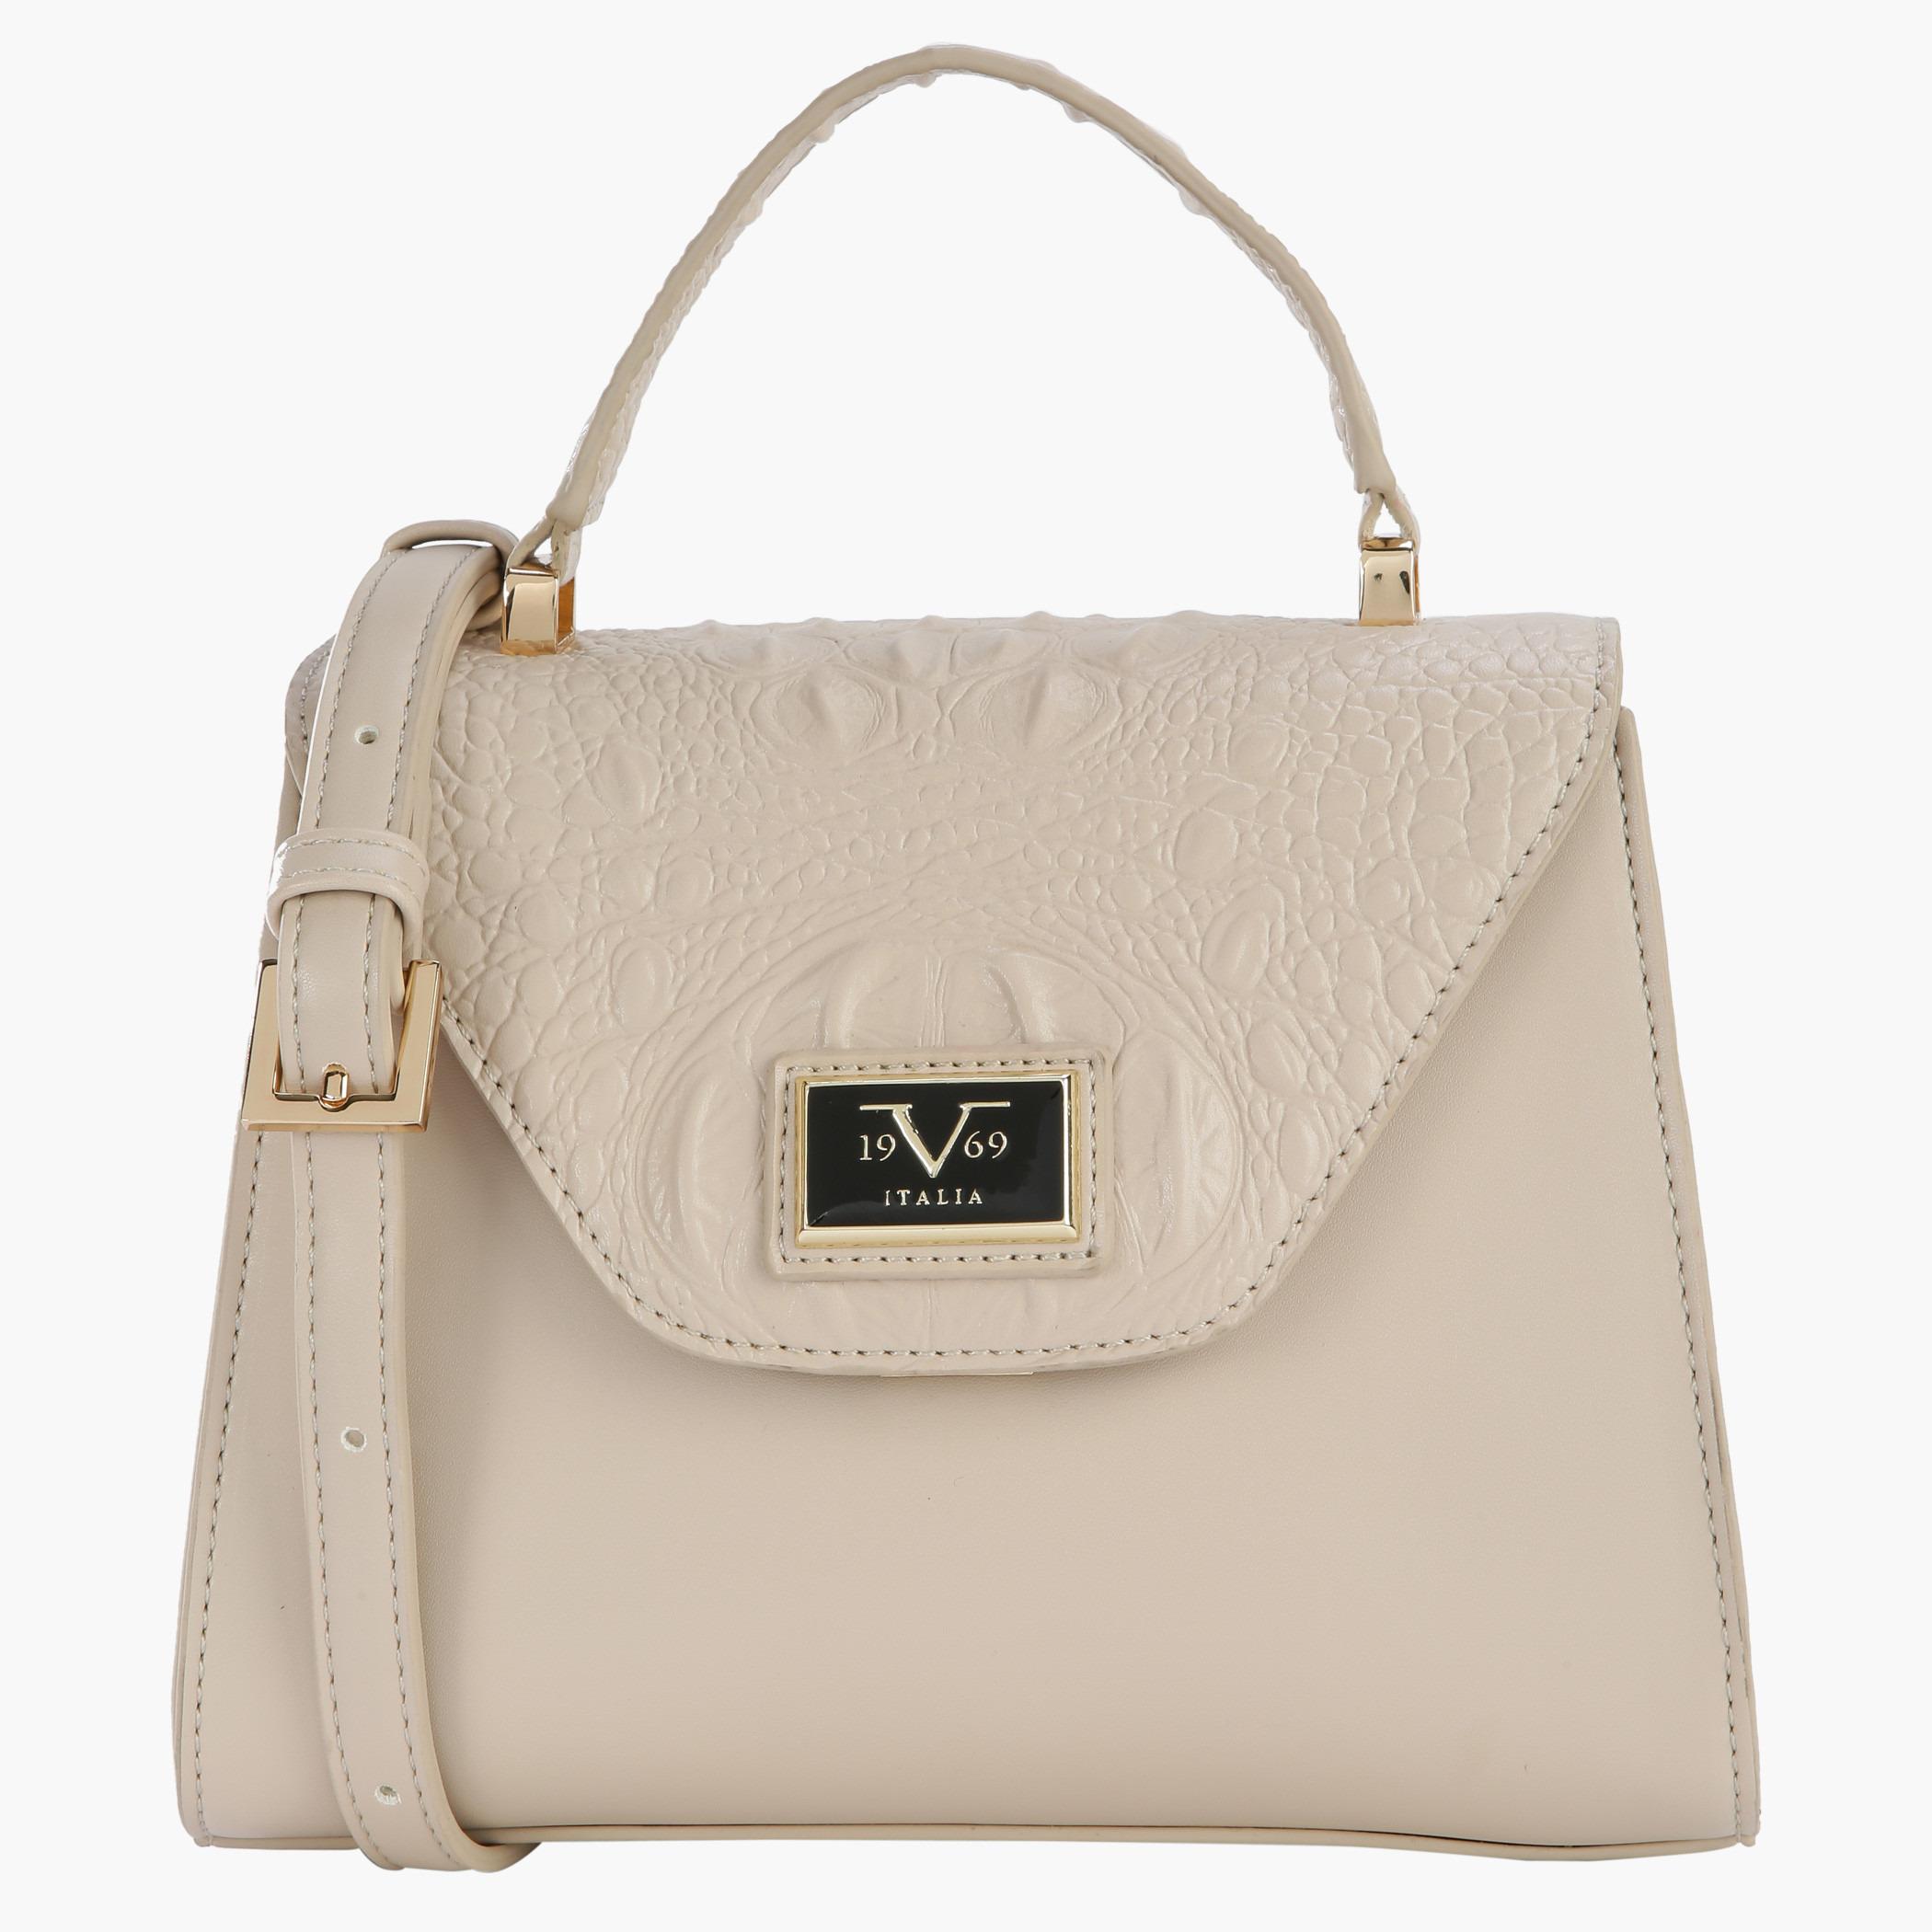 Versace 19v69 red hand/shoulder bag | Shoulder bag, Bags, Versace